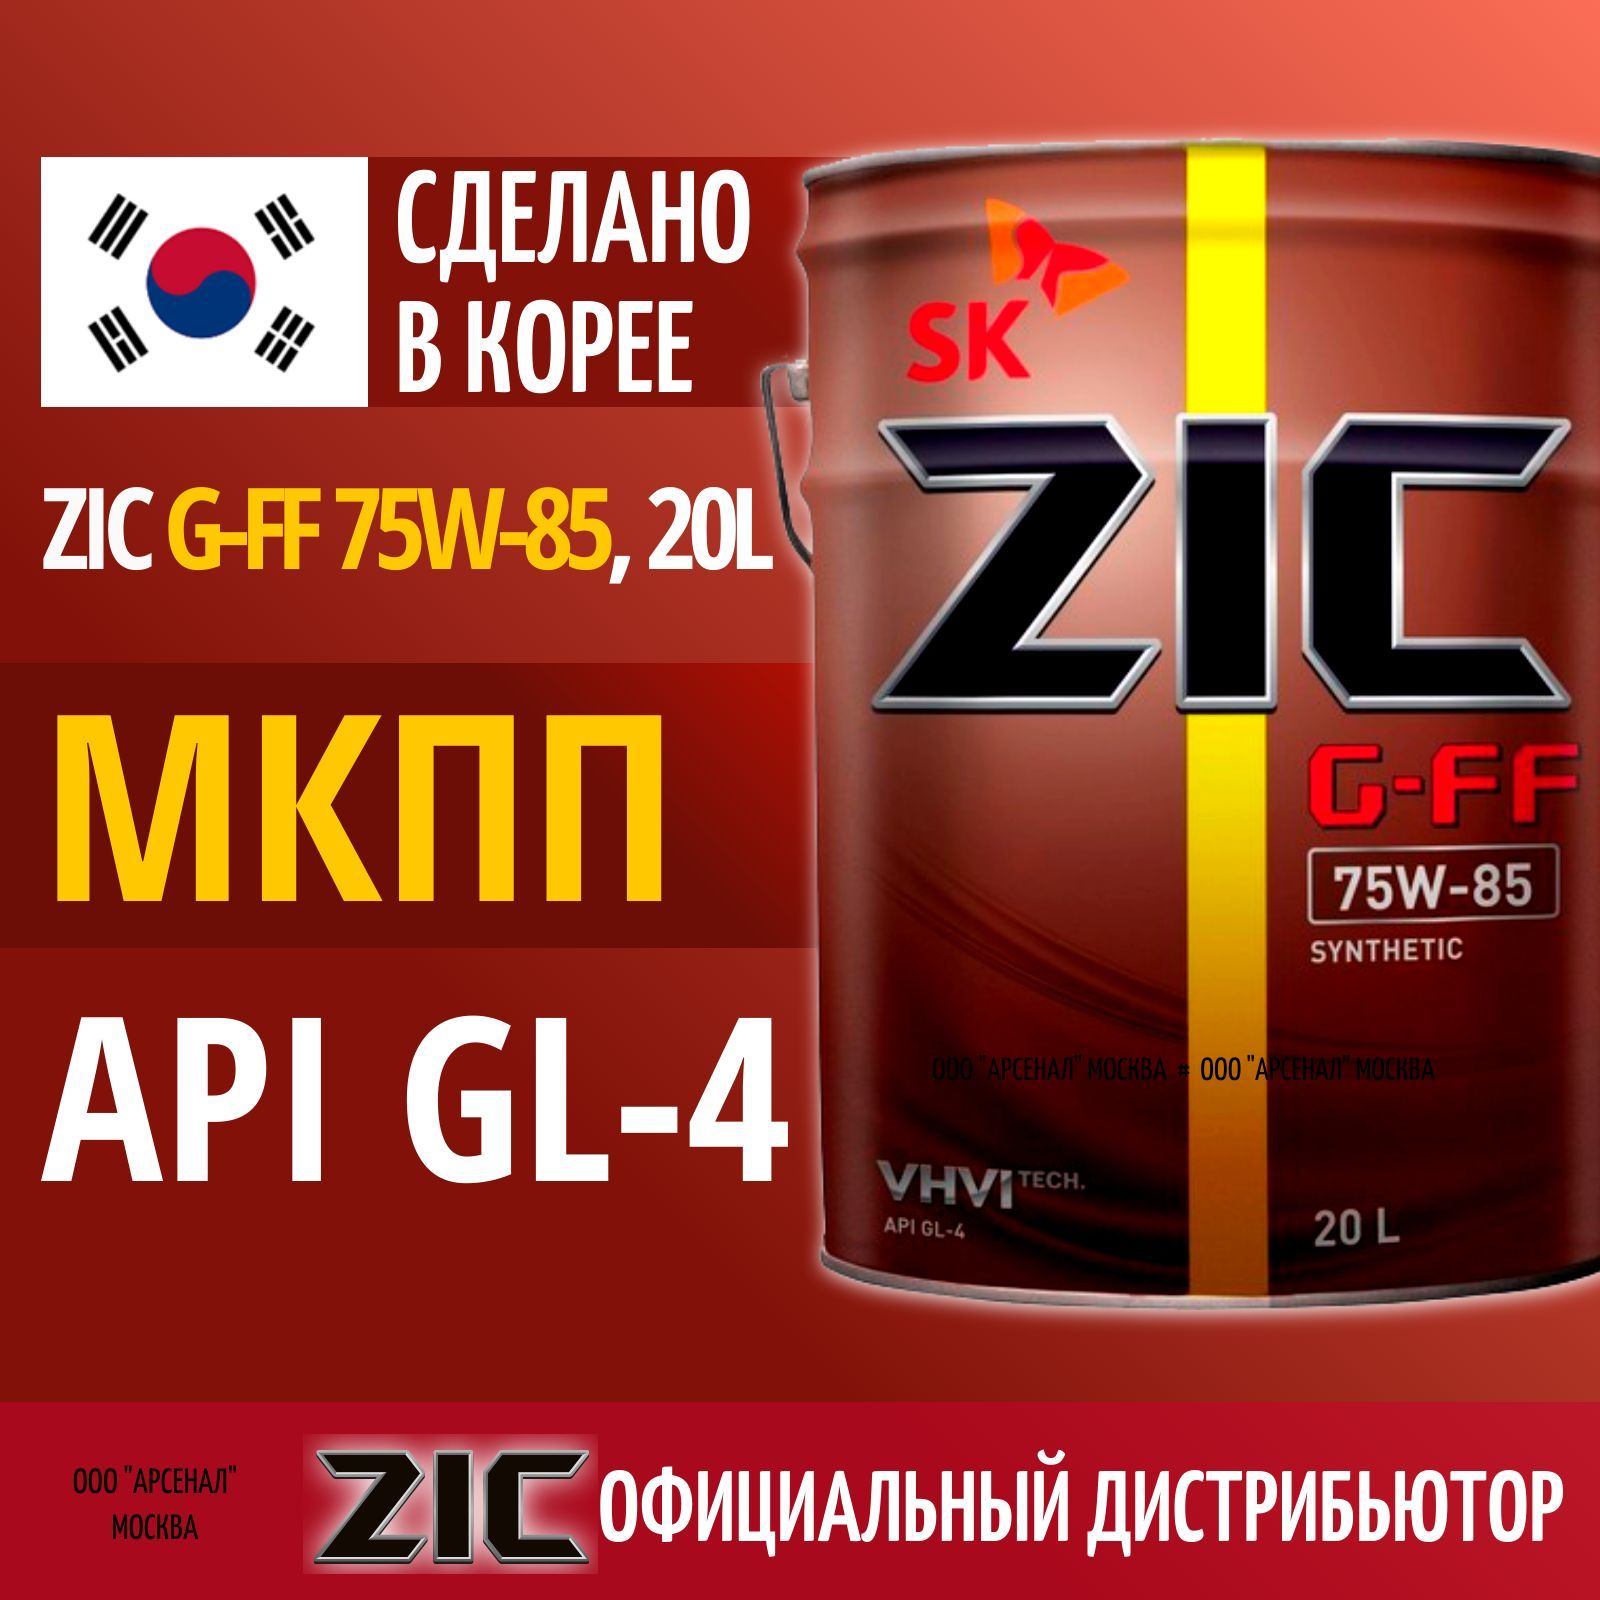 Zic g ff 75w85. ZIC G-FF 75w-85 200л.